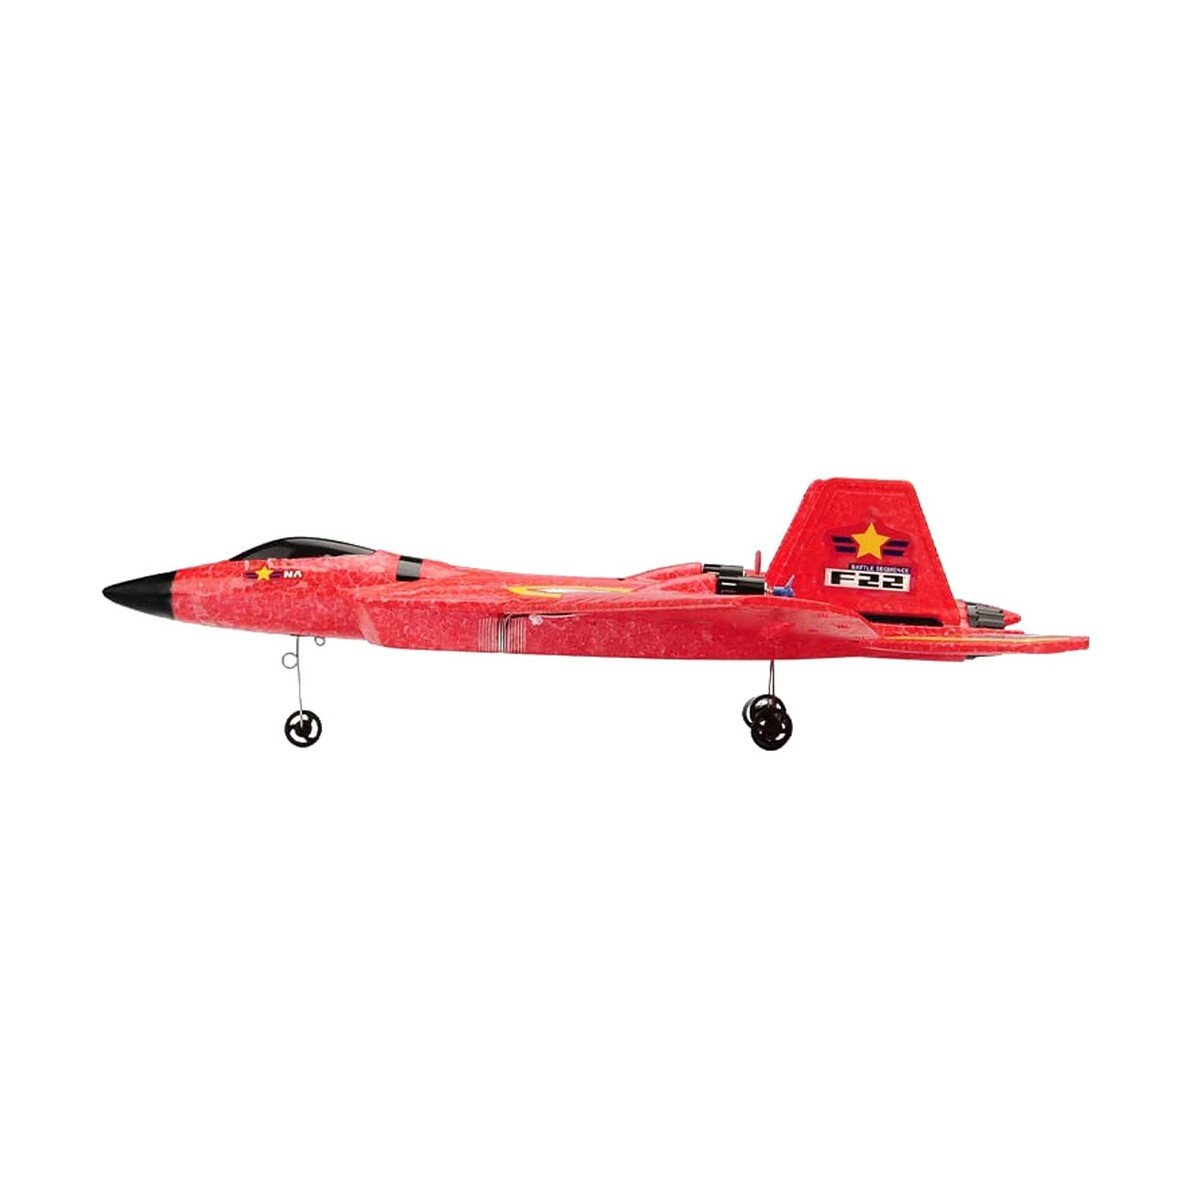 Dat R/C Foam Fighter Jet Set HT-HW